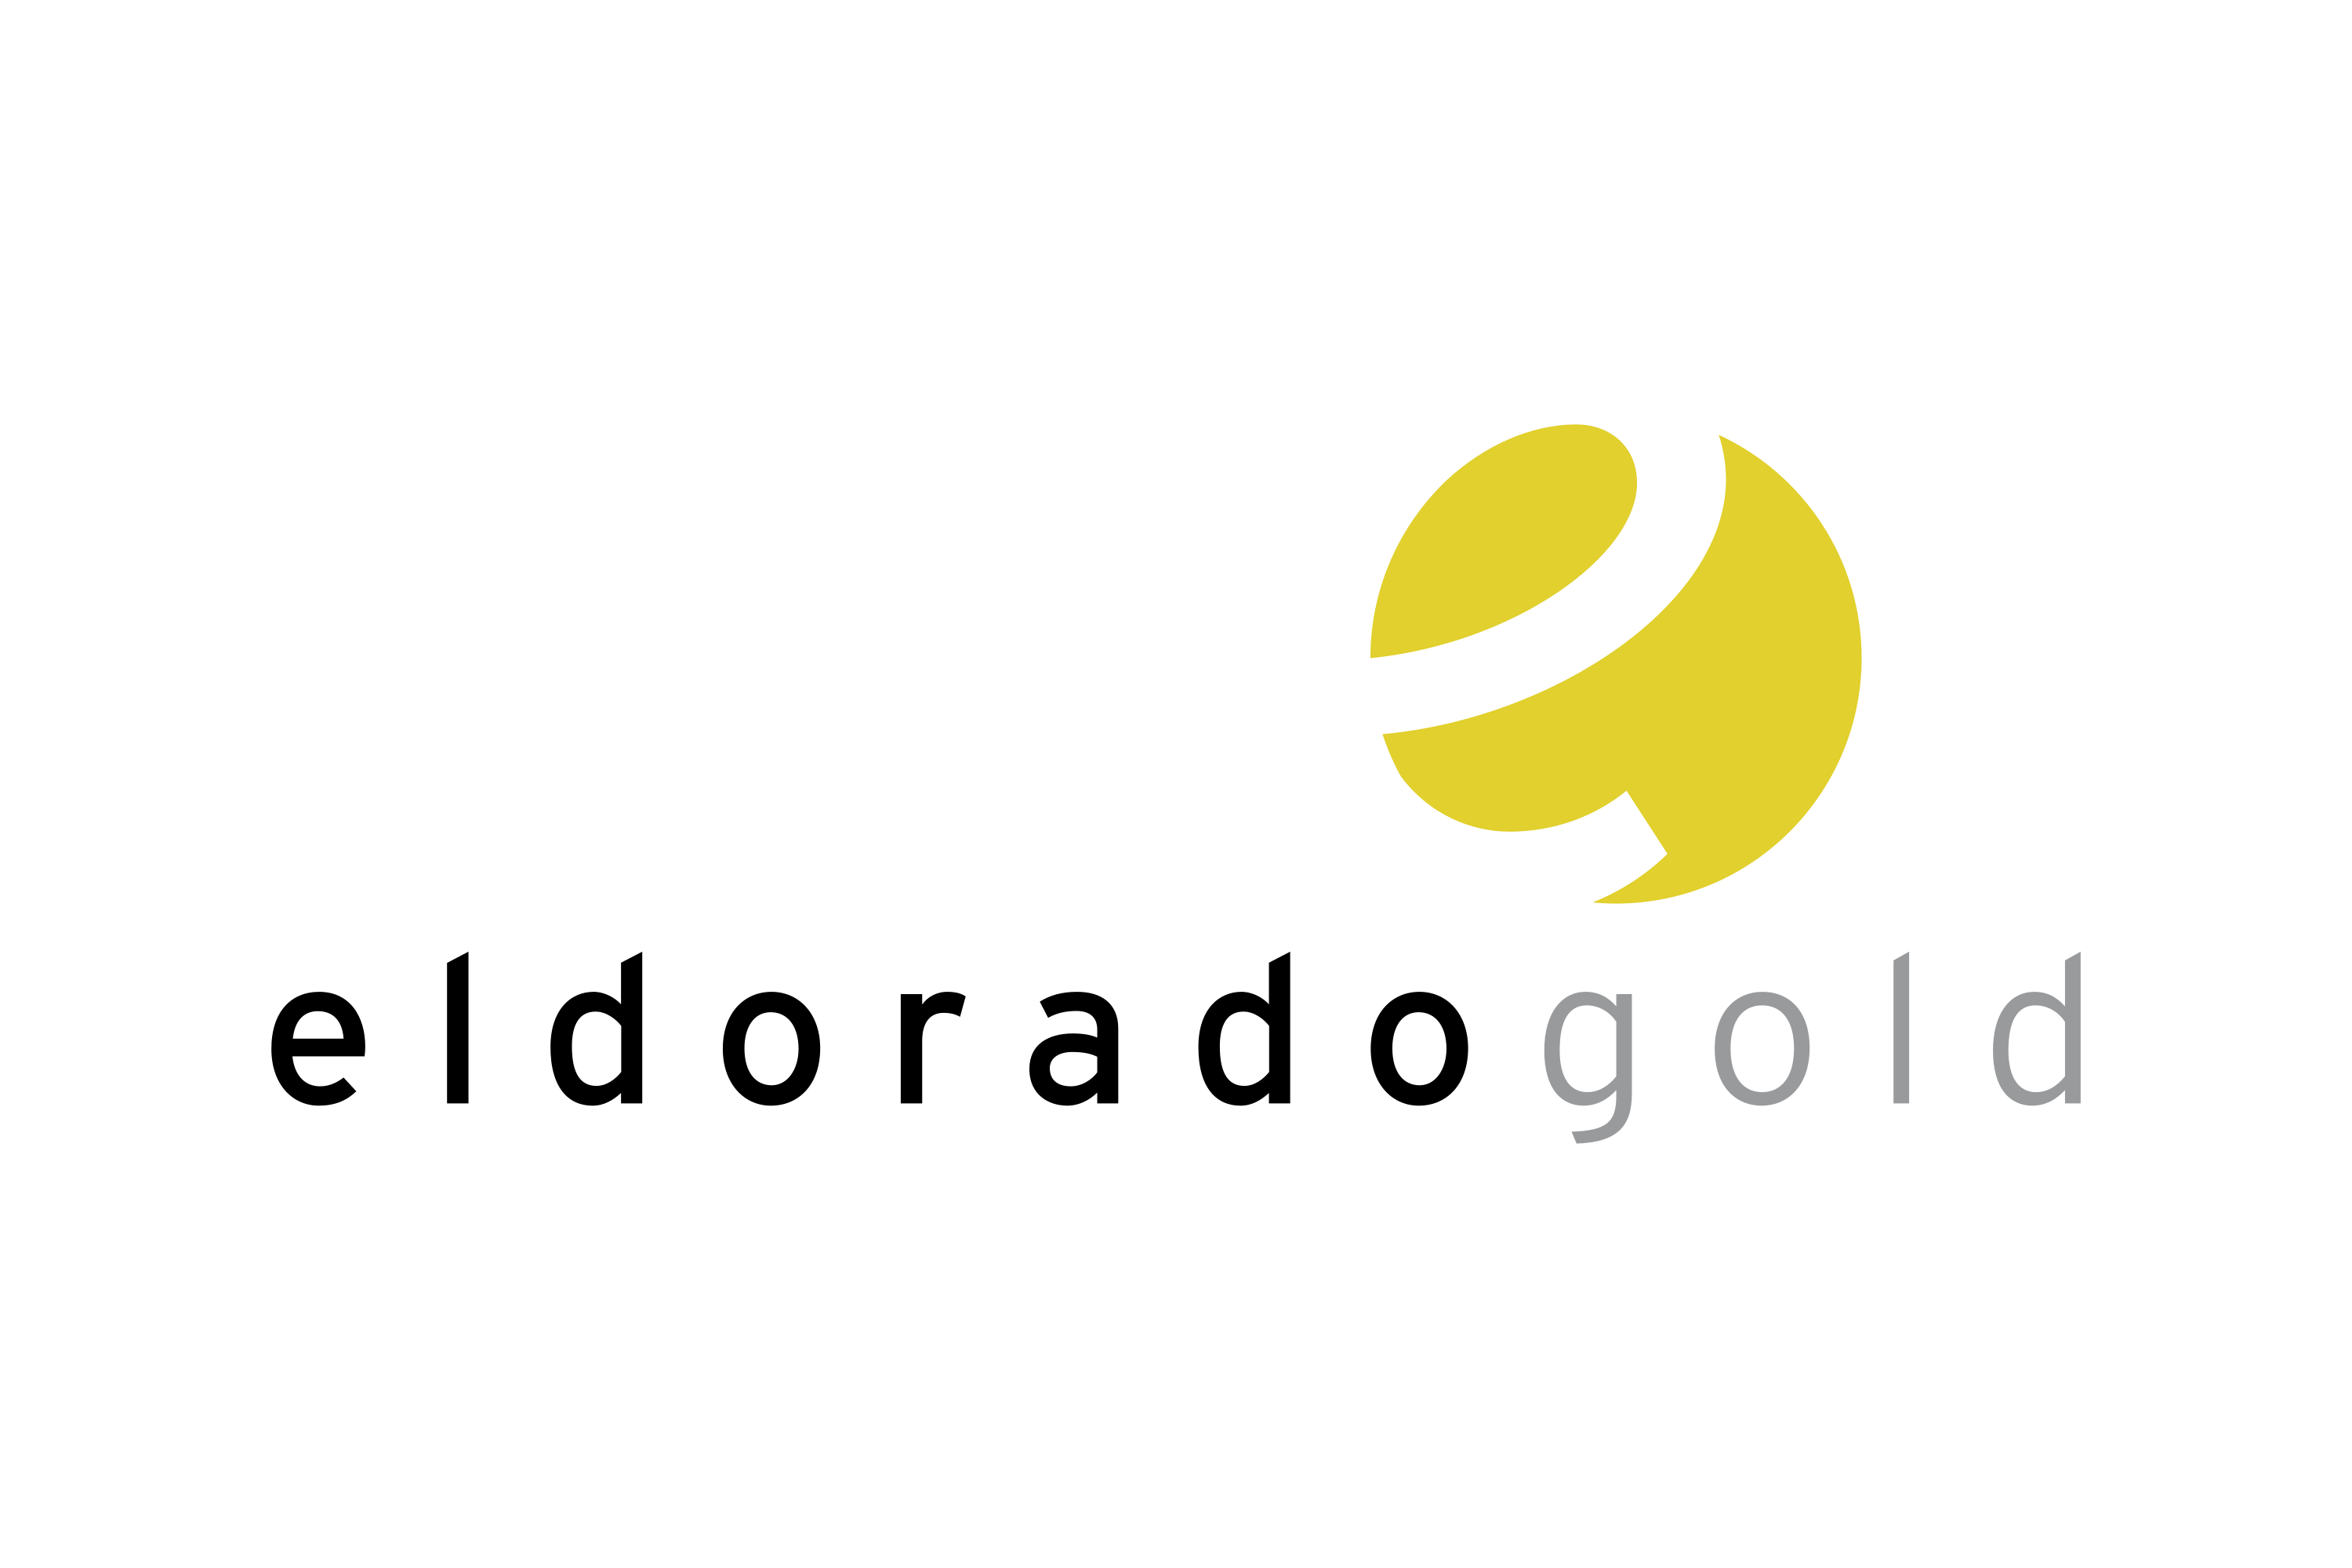 Download Eldorado Gold Logo in SVG Vector or PNG File Format - Logo.wine